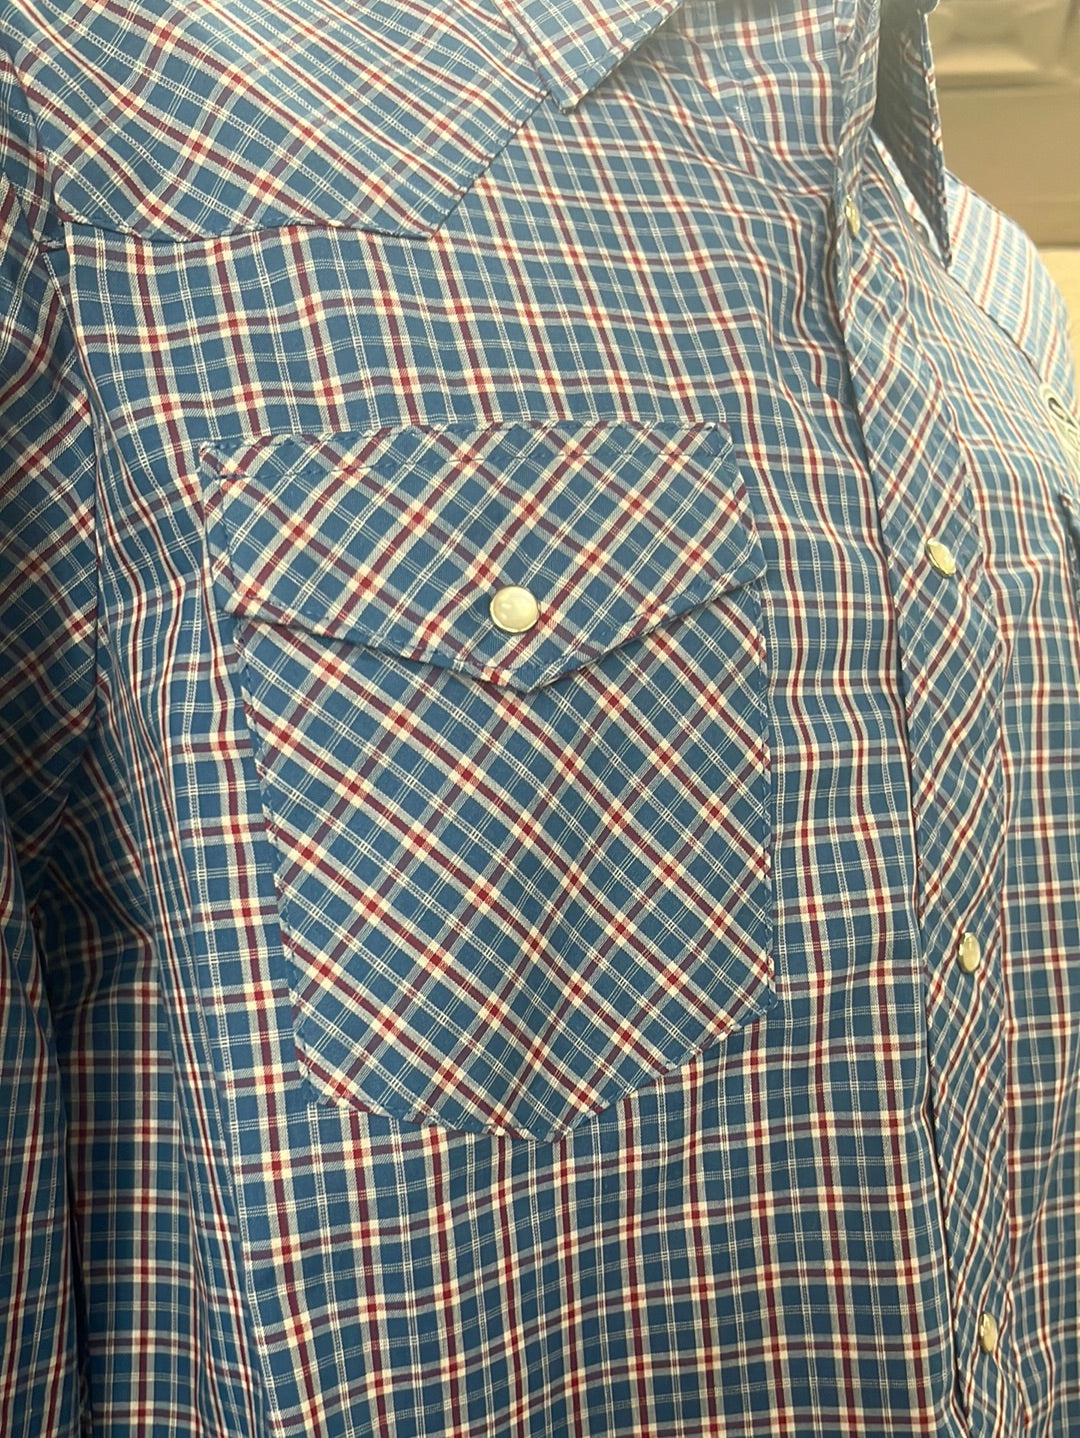 Mens Blue and Red Plaid Wrangler Button Up Shirt